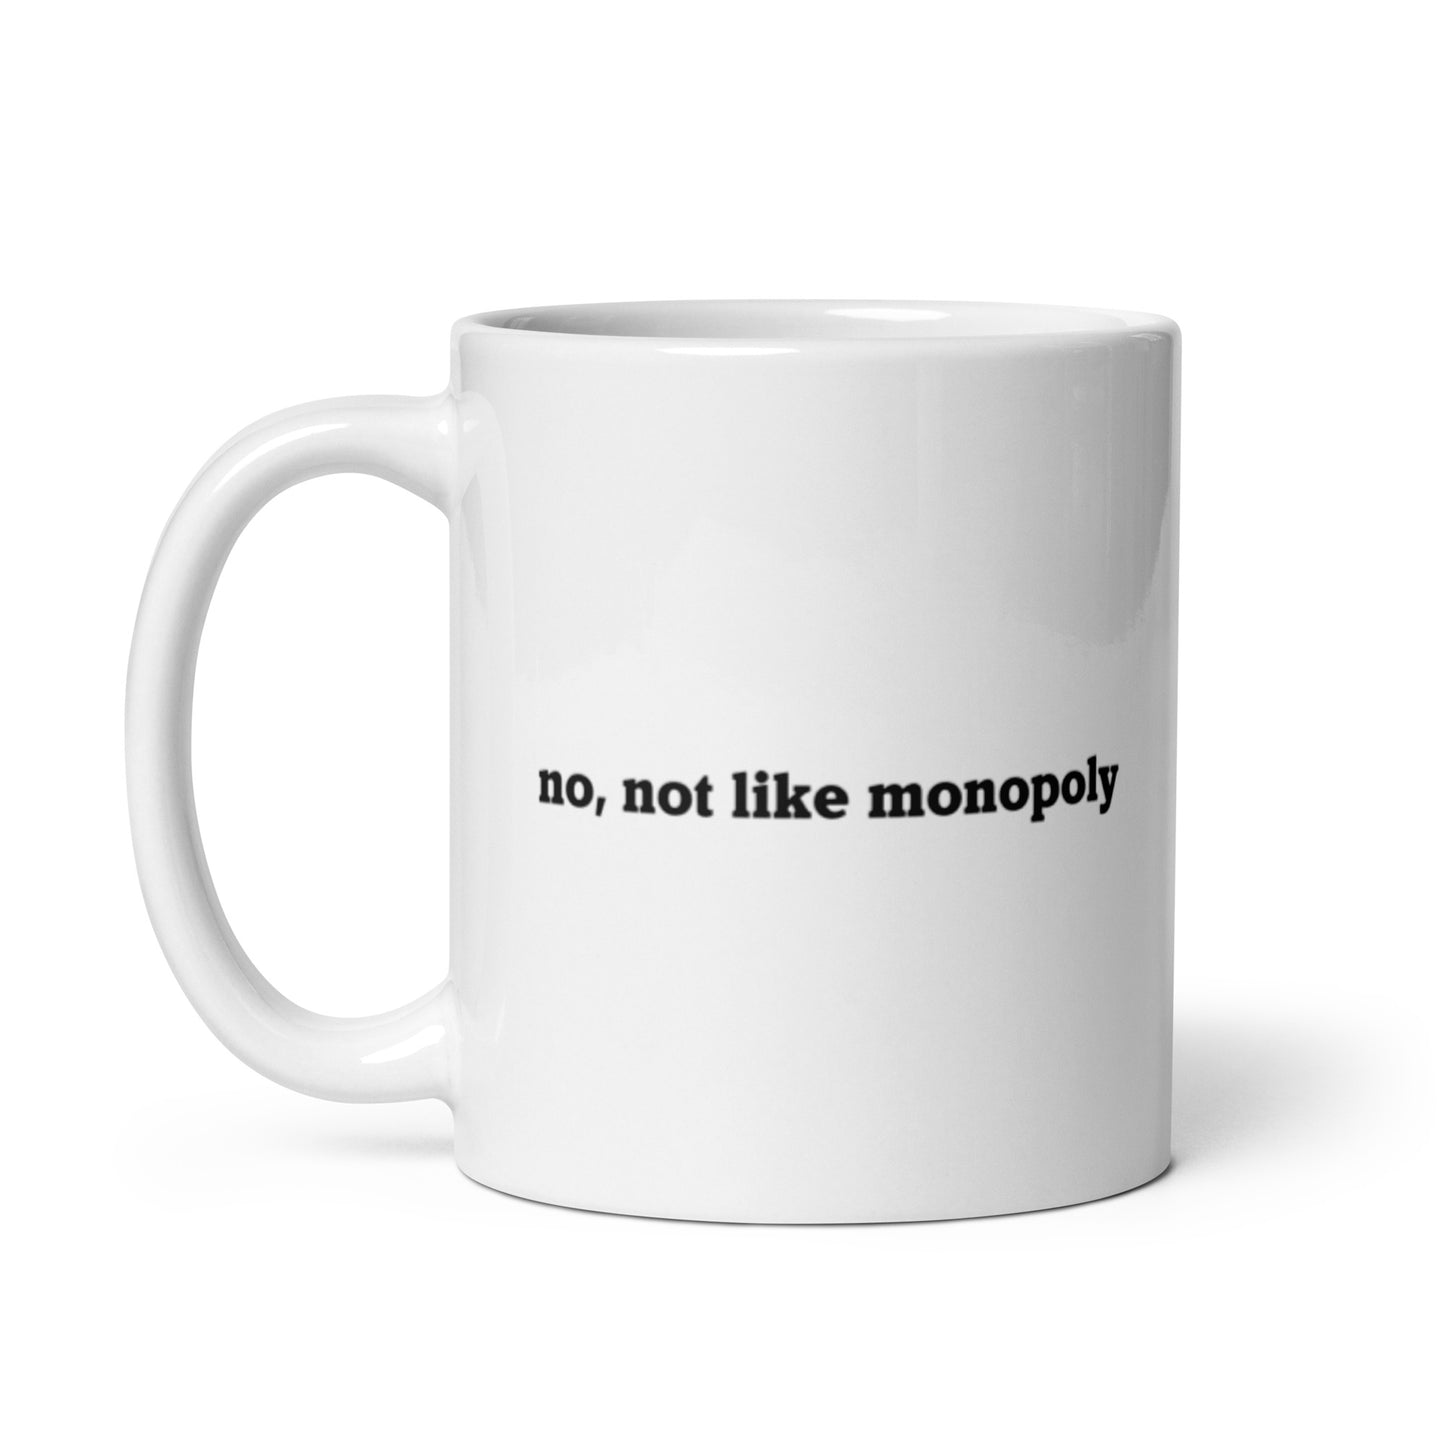 'no, not like monopoly" Ceramic Mug